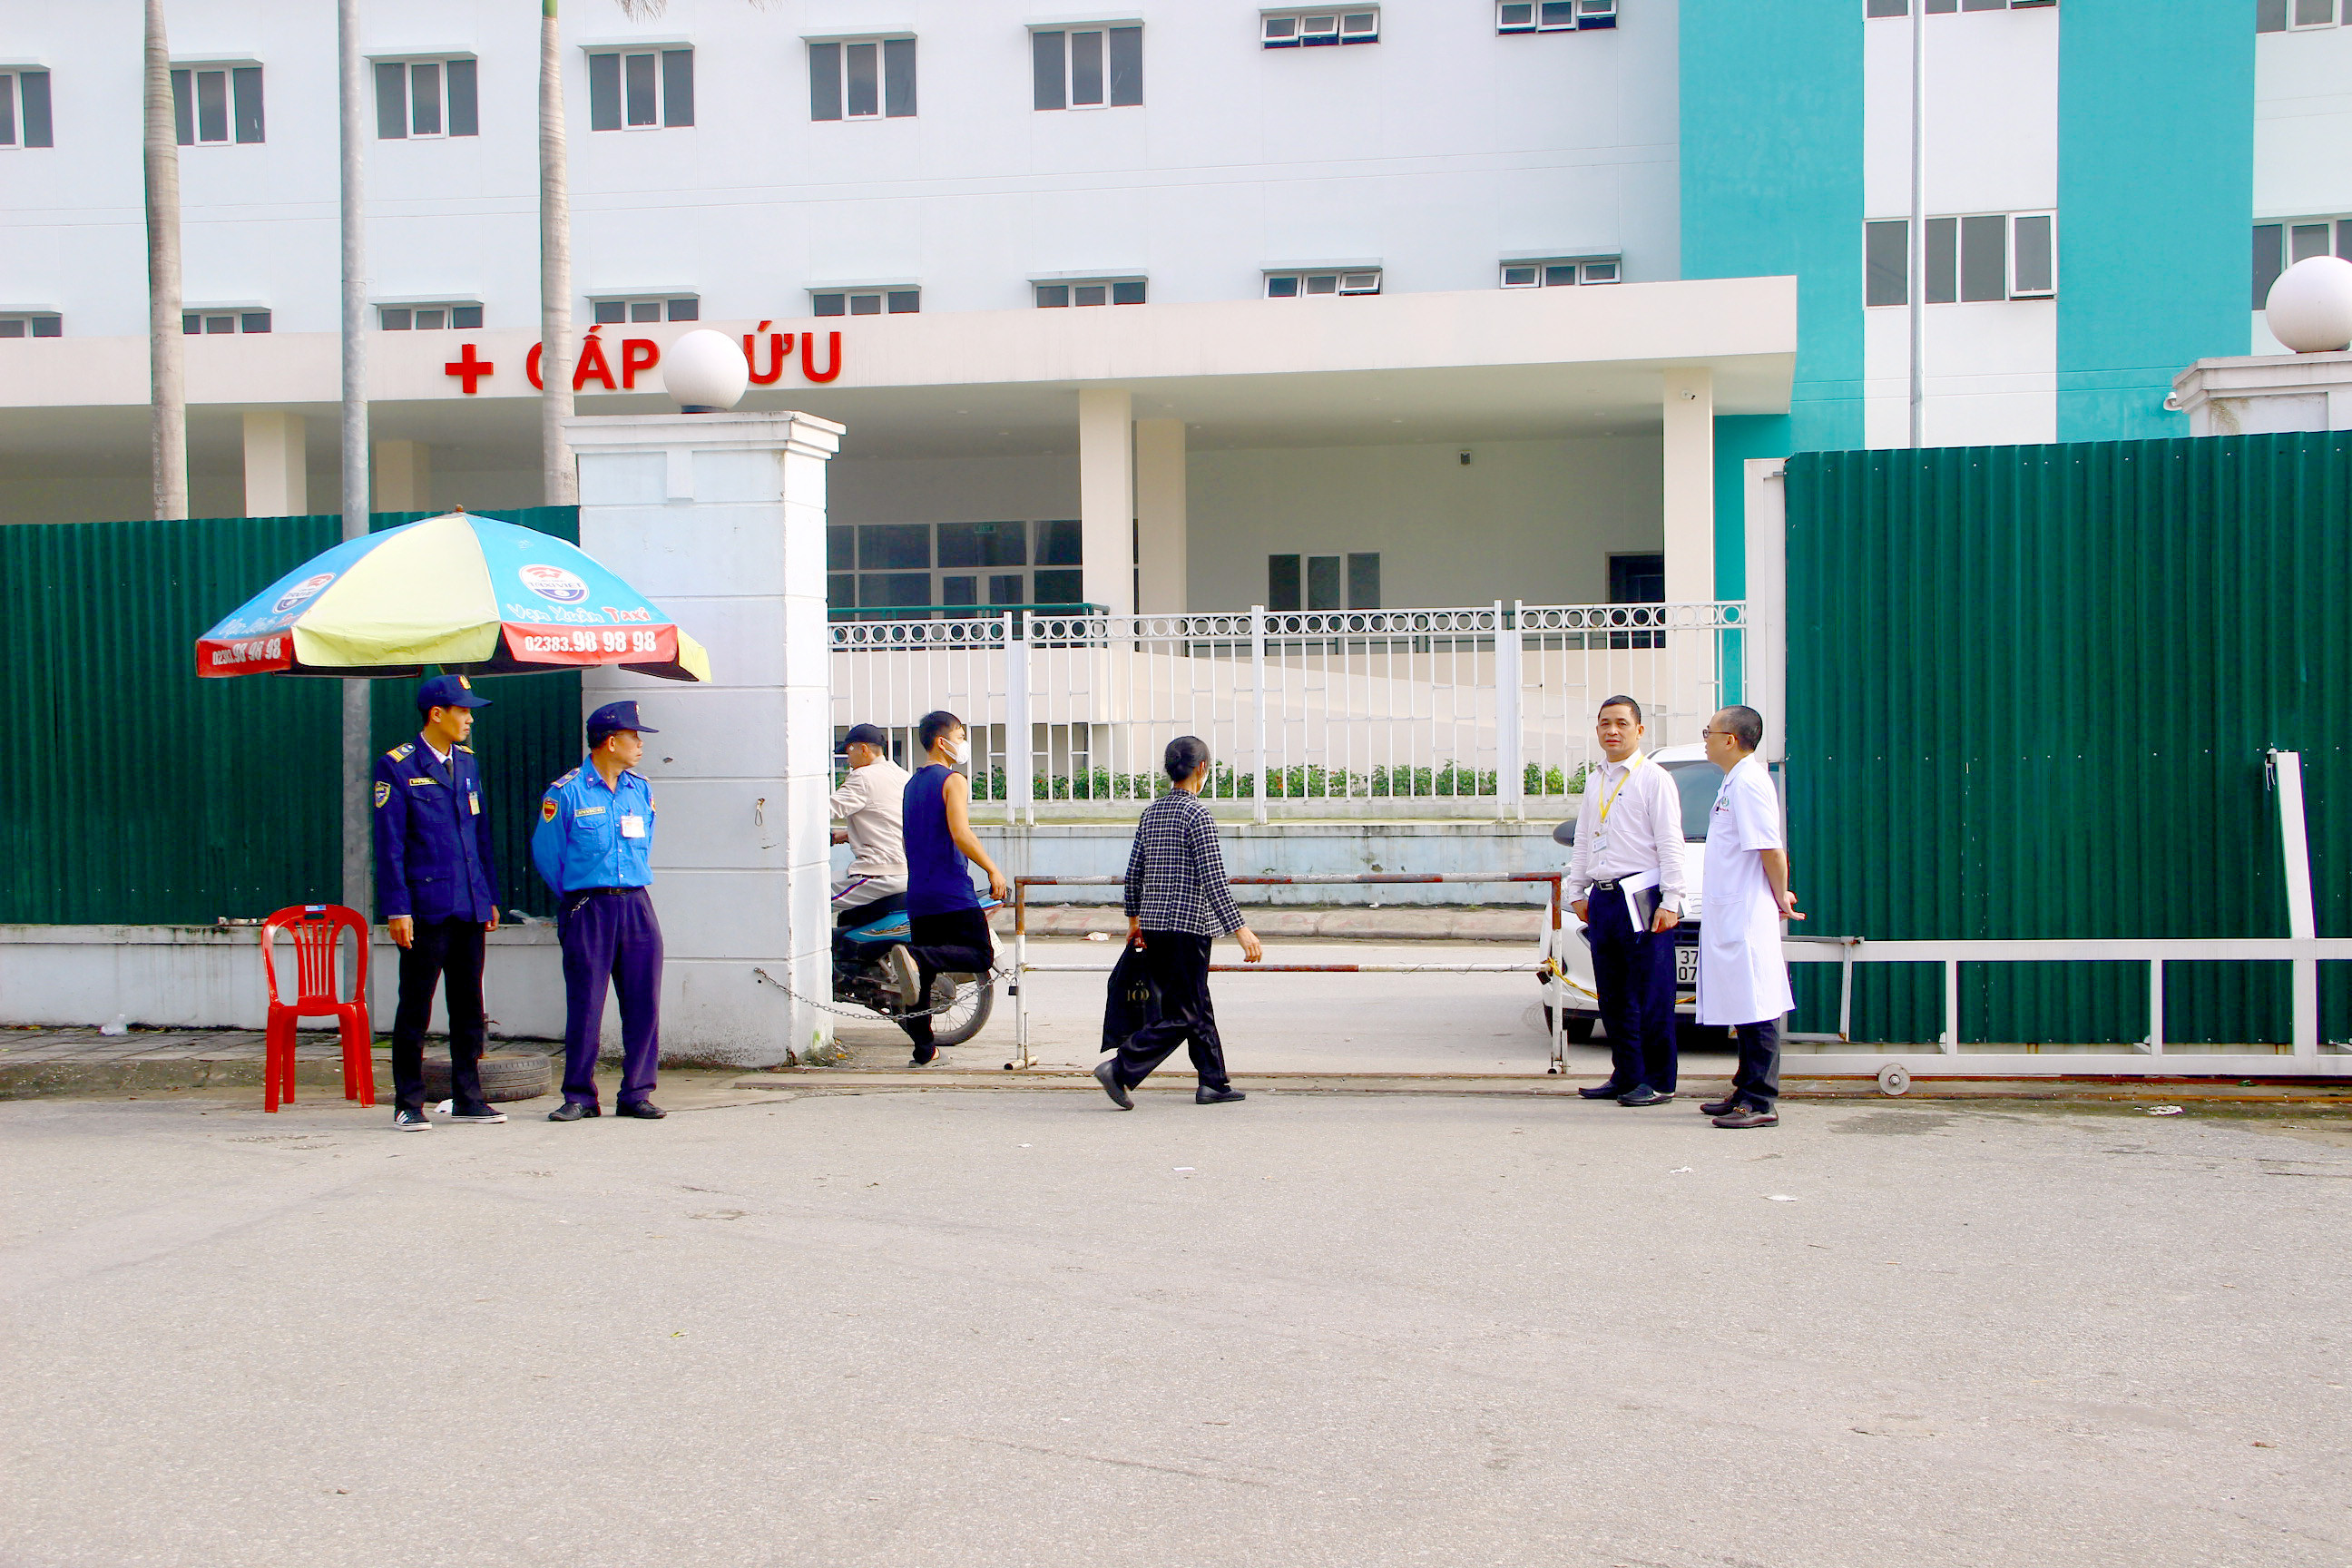 bna_cổng phía Nam của Bệnh viện Hữu nghị Đa khoa Nghệ An đã được mở để giảm áp lực cho cổng chính ảnh Quang An.jpg